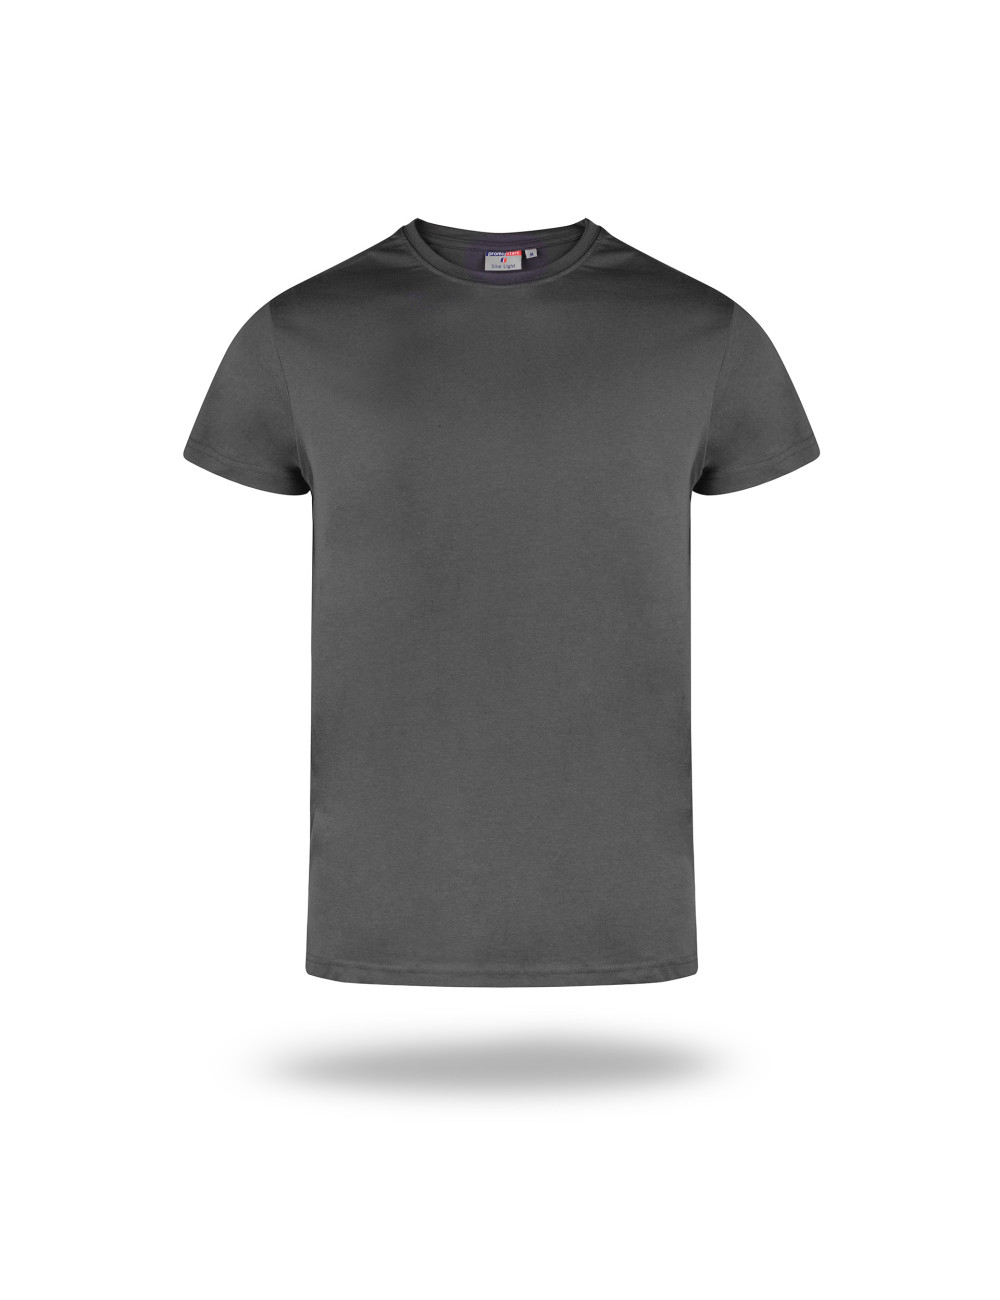 Schlankes, leichtes Herren-T-Shirt in Grau von Promostars